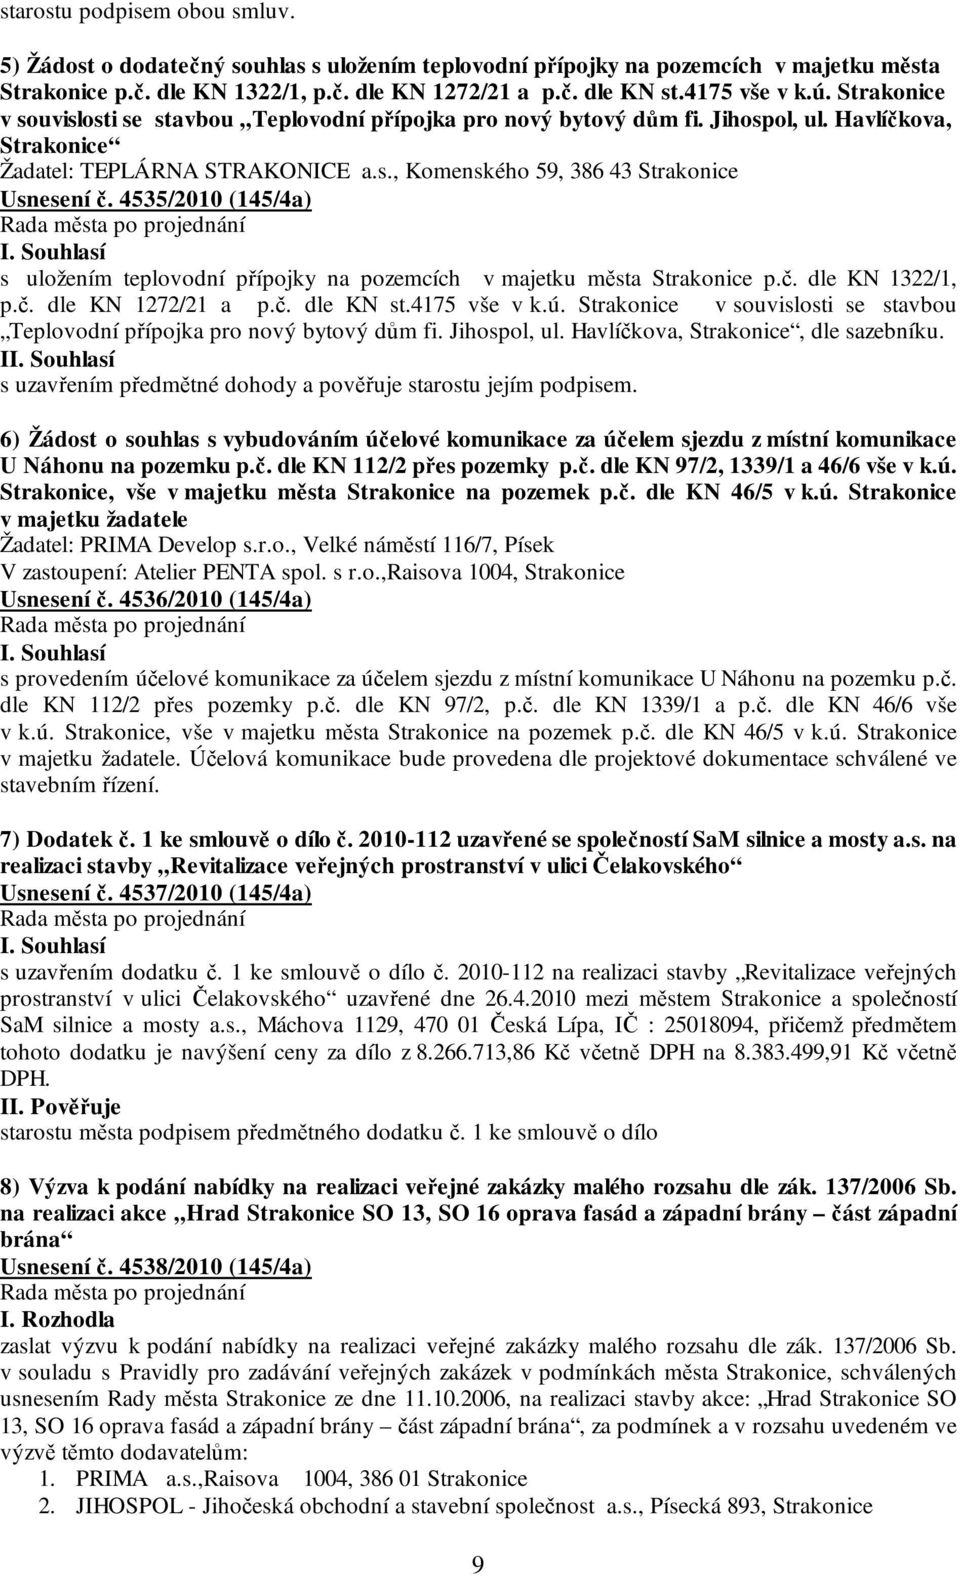 4535/2010 (145/4a) s uložením teplovodní přípojky na pozemcích v majetku města Strakonice p.č. dle KN 1322/1, p.č. dle KN 1272/21 a p.č. dle KN st.4175 vše v k.ú.